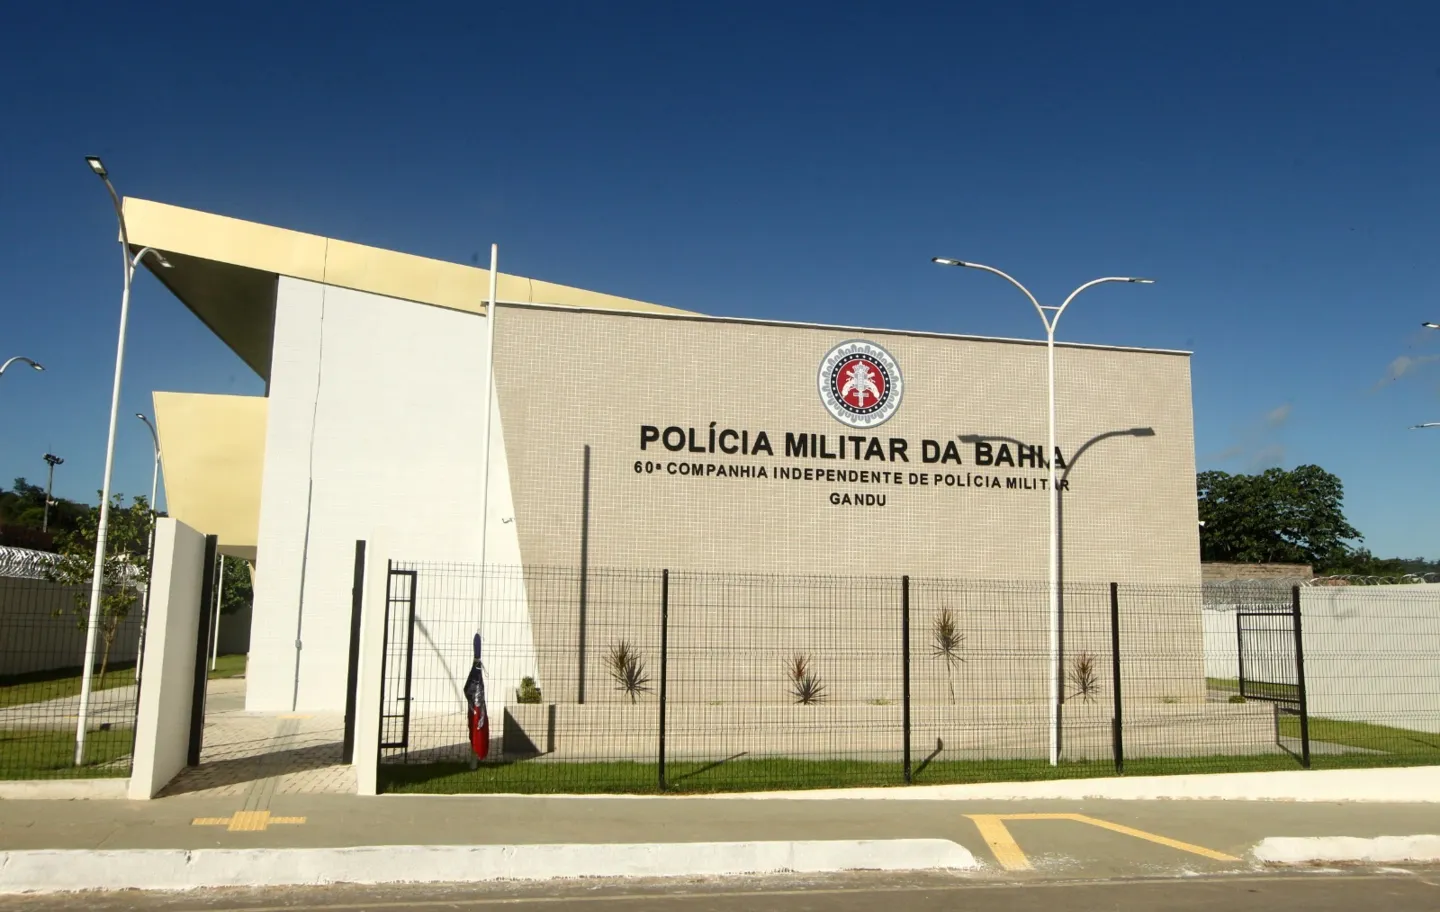 Nova sede da 60ª Companhia Independente de Polícia Militar (CIPM)